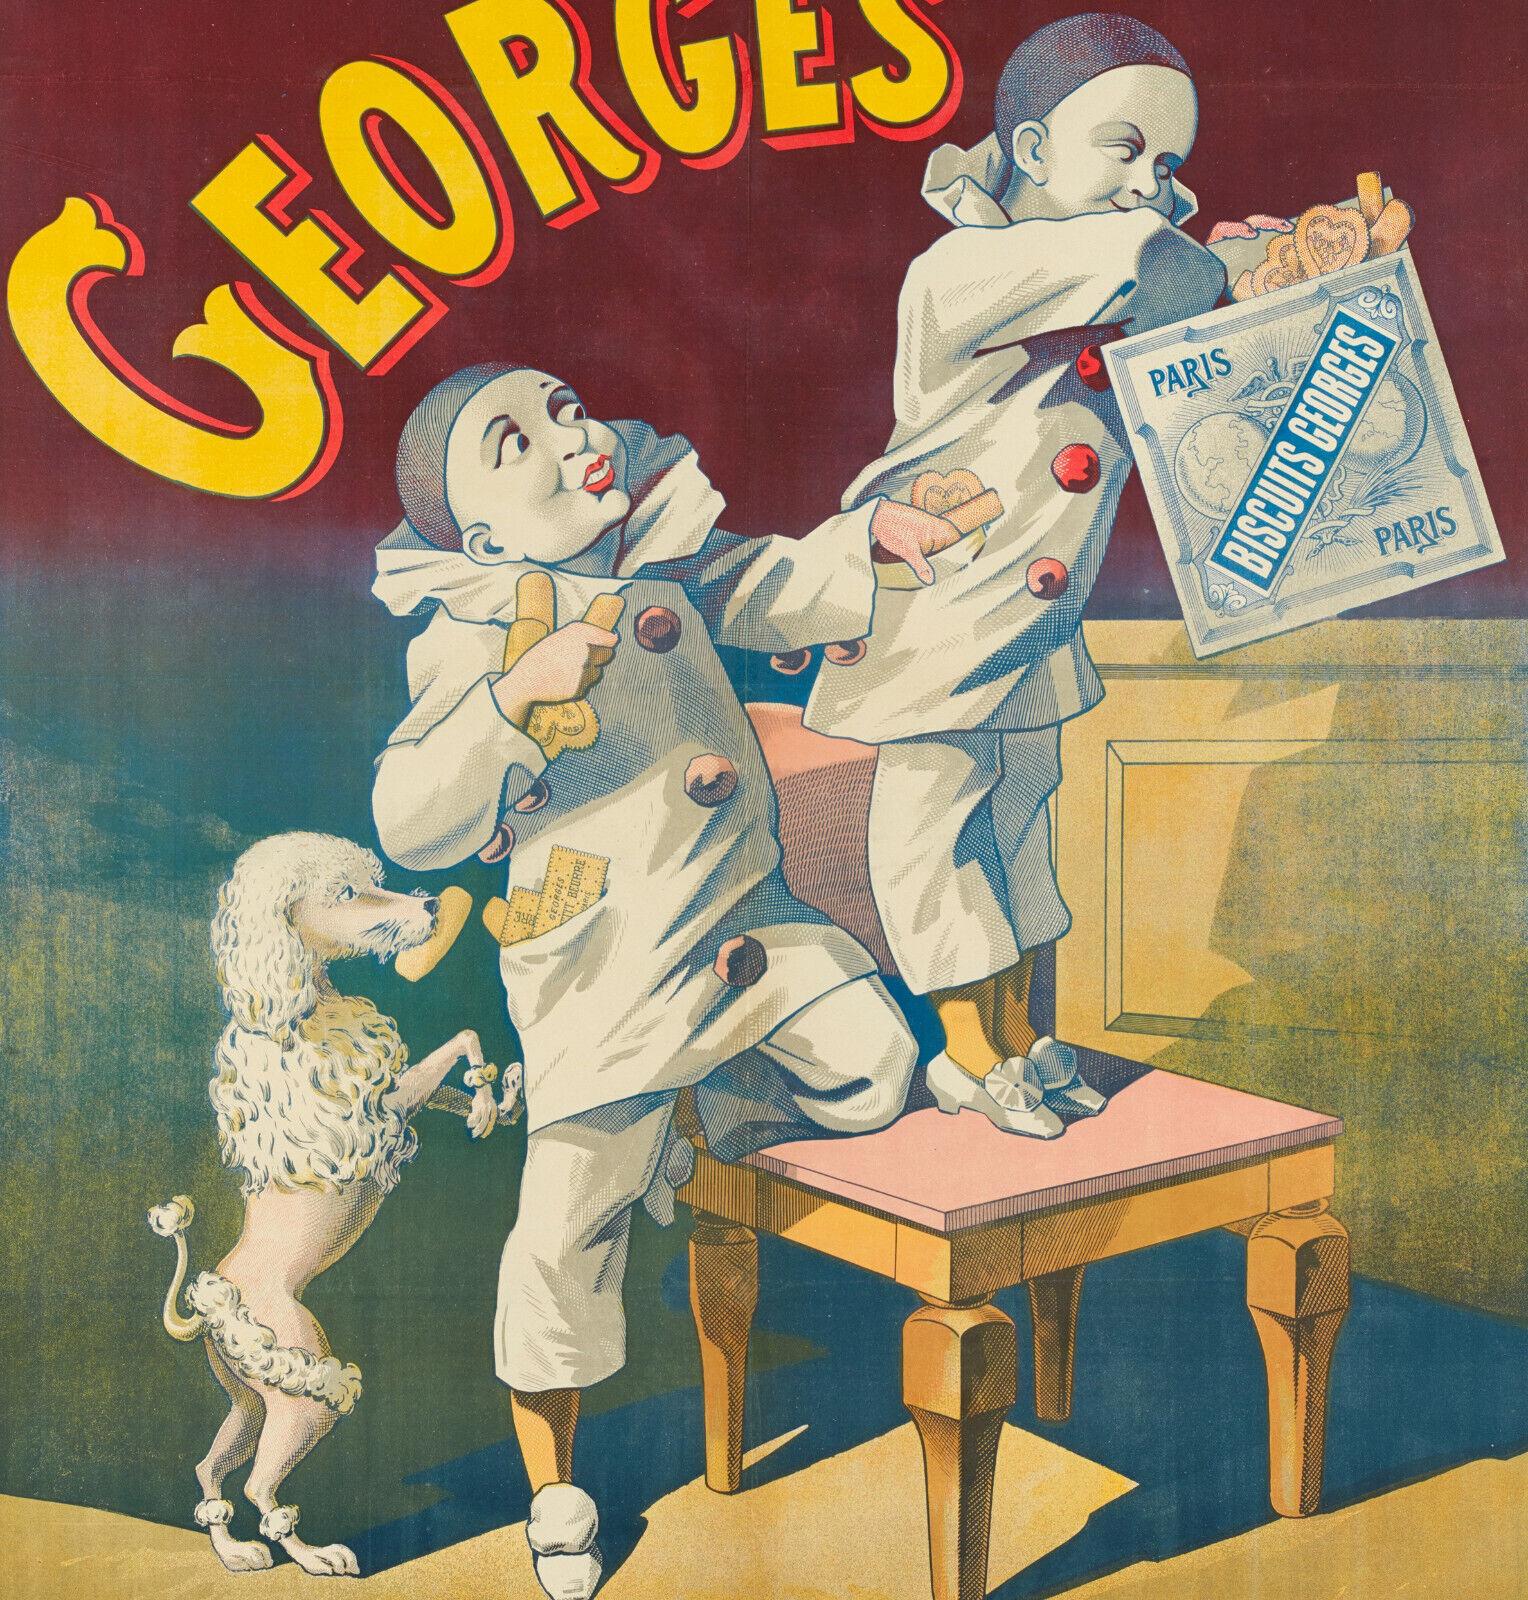 Original Vintage Poster-Biscuit Georges-Caniche-Pierrot-Paris-Chien, 1900

Auf dem Plakat stiehlt ein Pudel Kekse aus der Tasche eines Pierrots, der sie wiederum einem anderen Pierrot stiehlt.

Zusätzliche Details:
MATERIALIEN und TECHNIKEN: